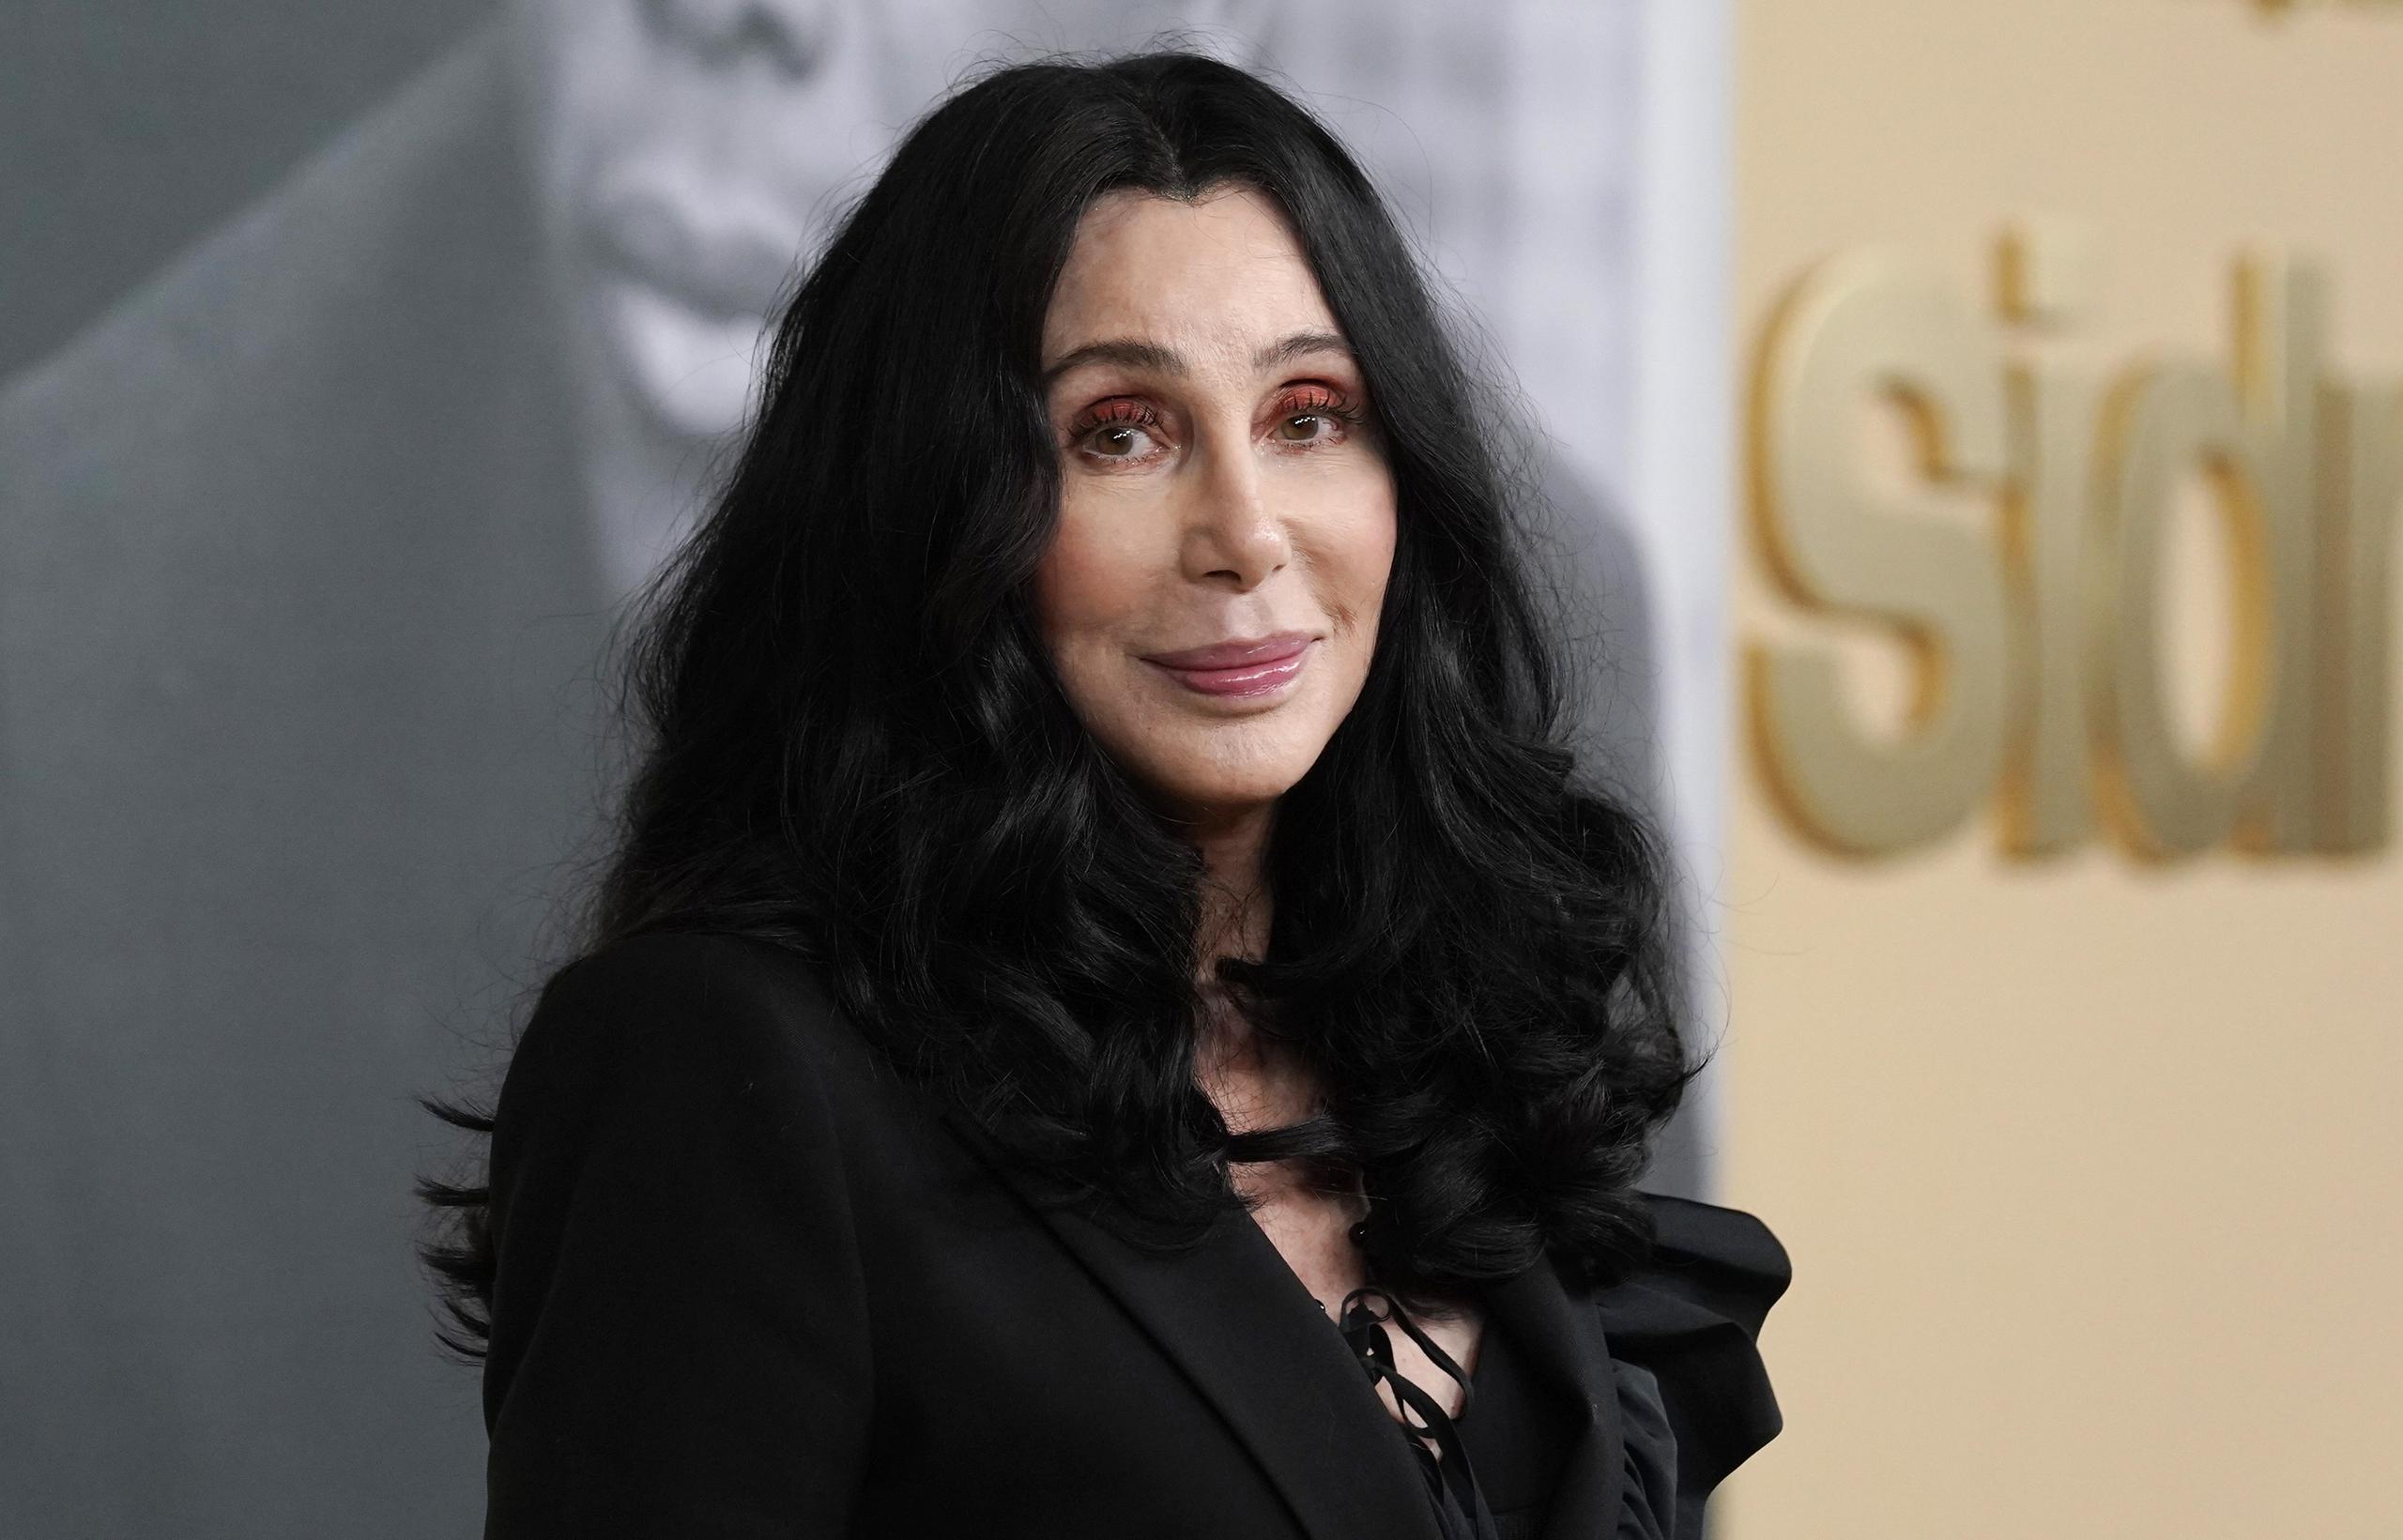 Esta no es la primera vez que Cher se convierte en noticia por los problemas de adicciones de su hijo.